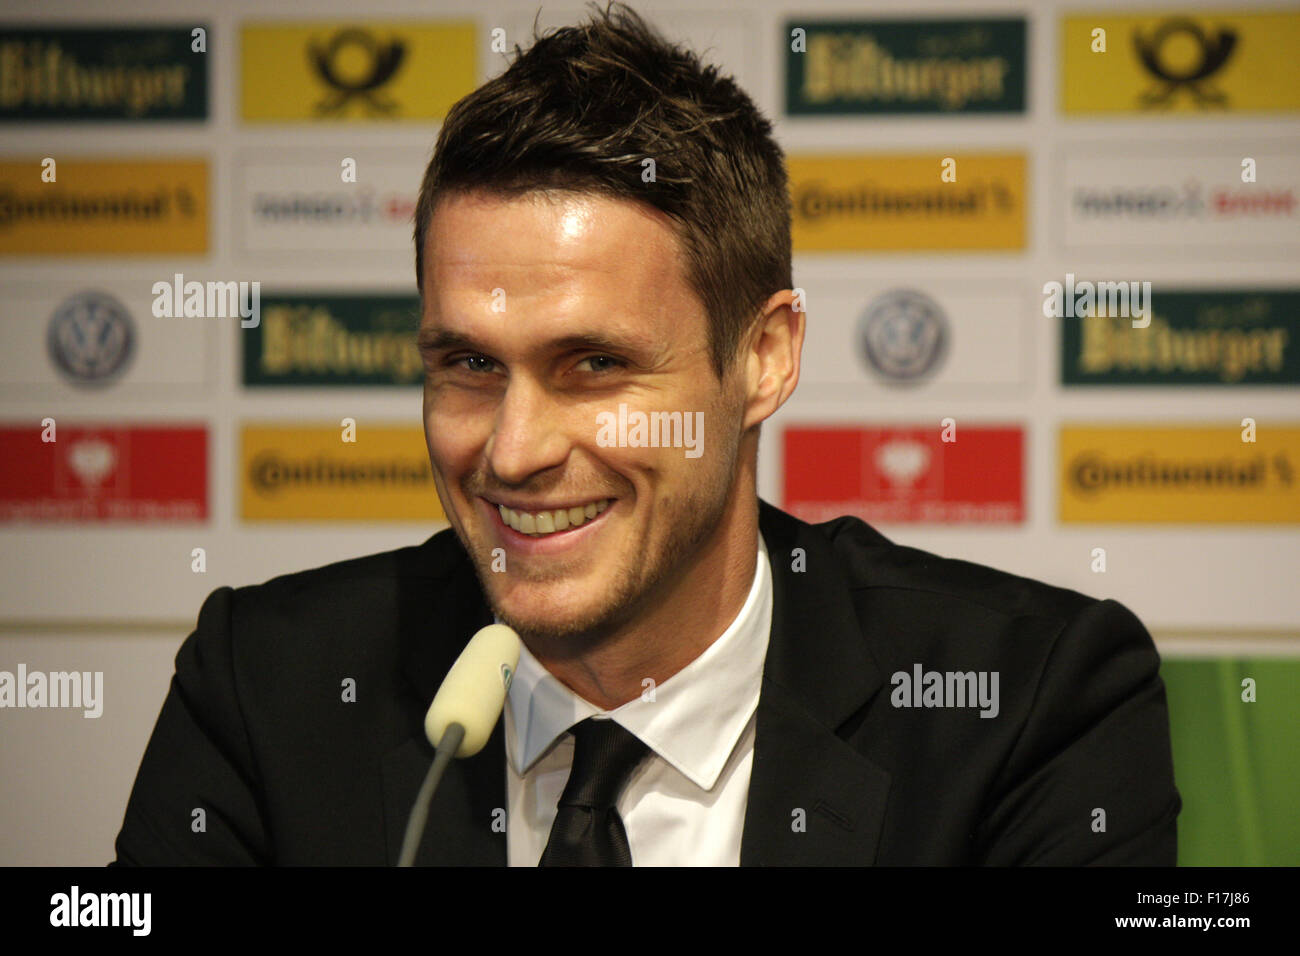 Sebastian Kehl - Pressekonferenz zum anstehenden Finale um den DFB-Pokal zwischen Borussia Dortmund und dem FC Bayern Muenchen, Stock Photo